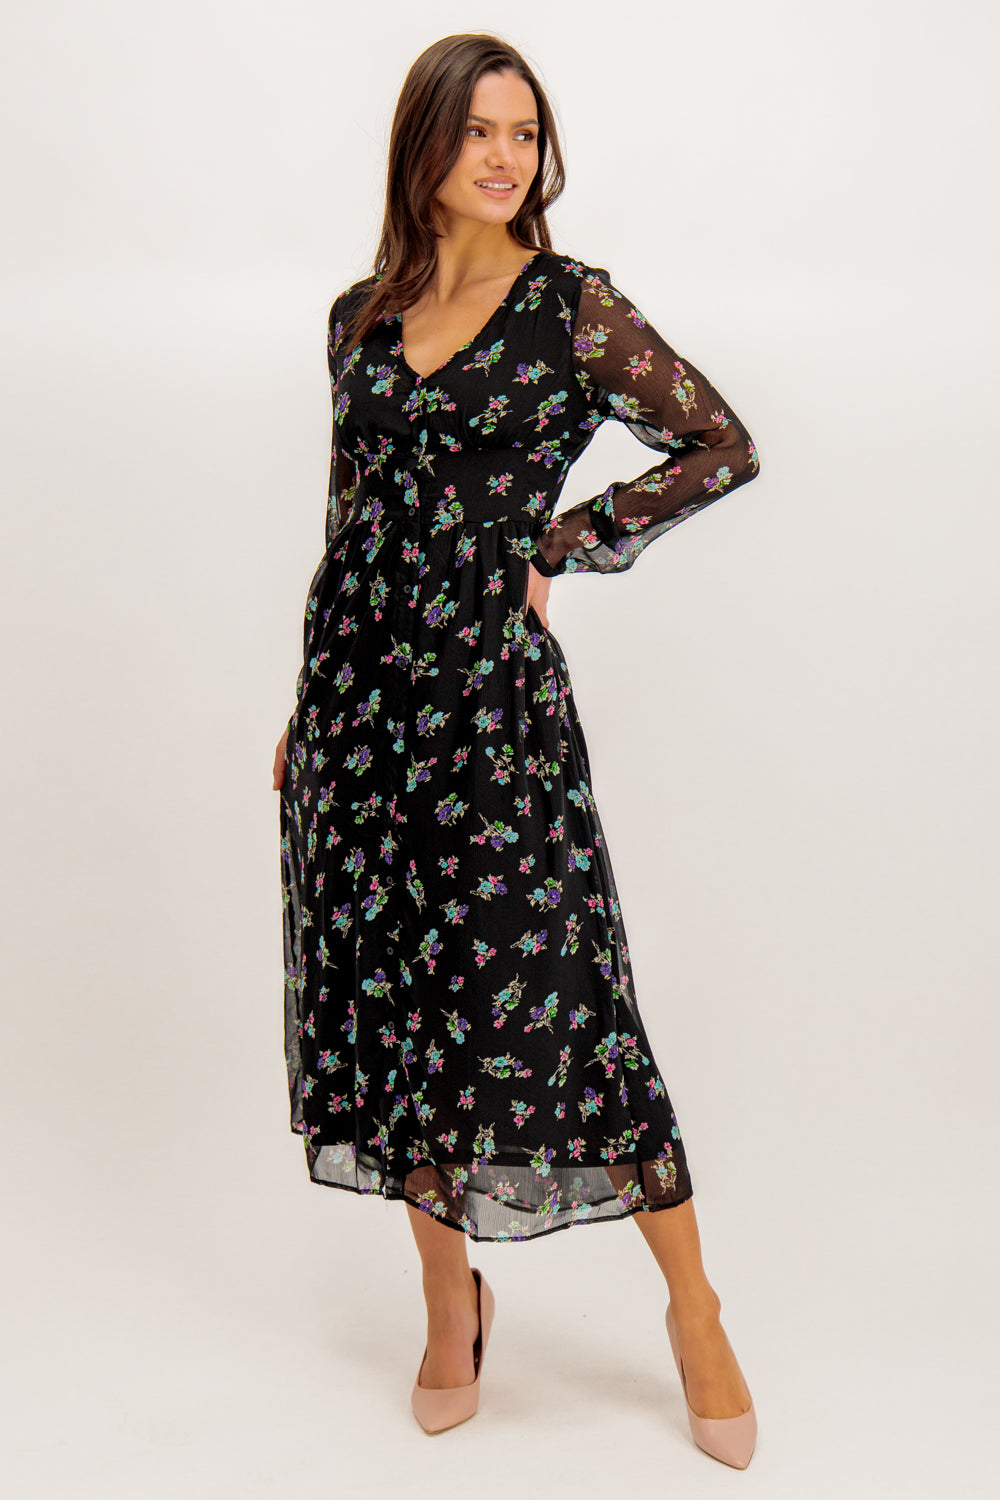 Malina Black Floral Print Midi Dress